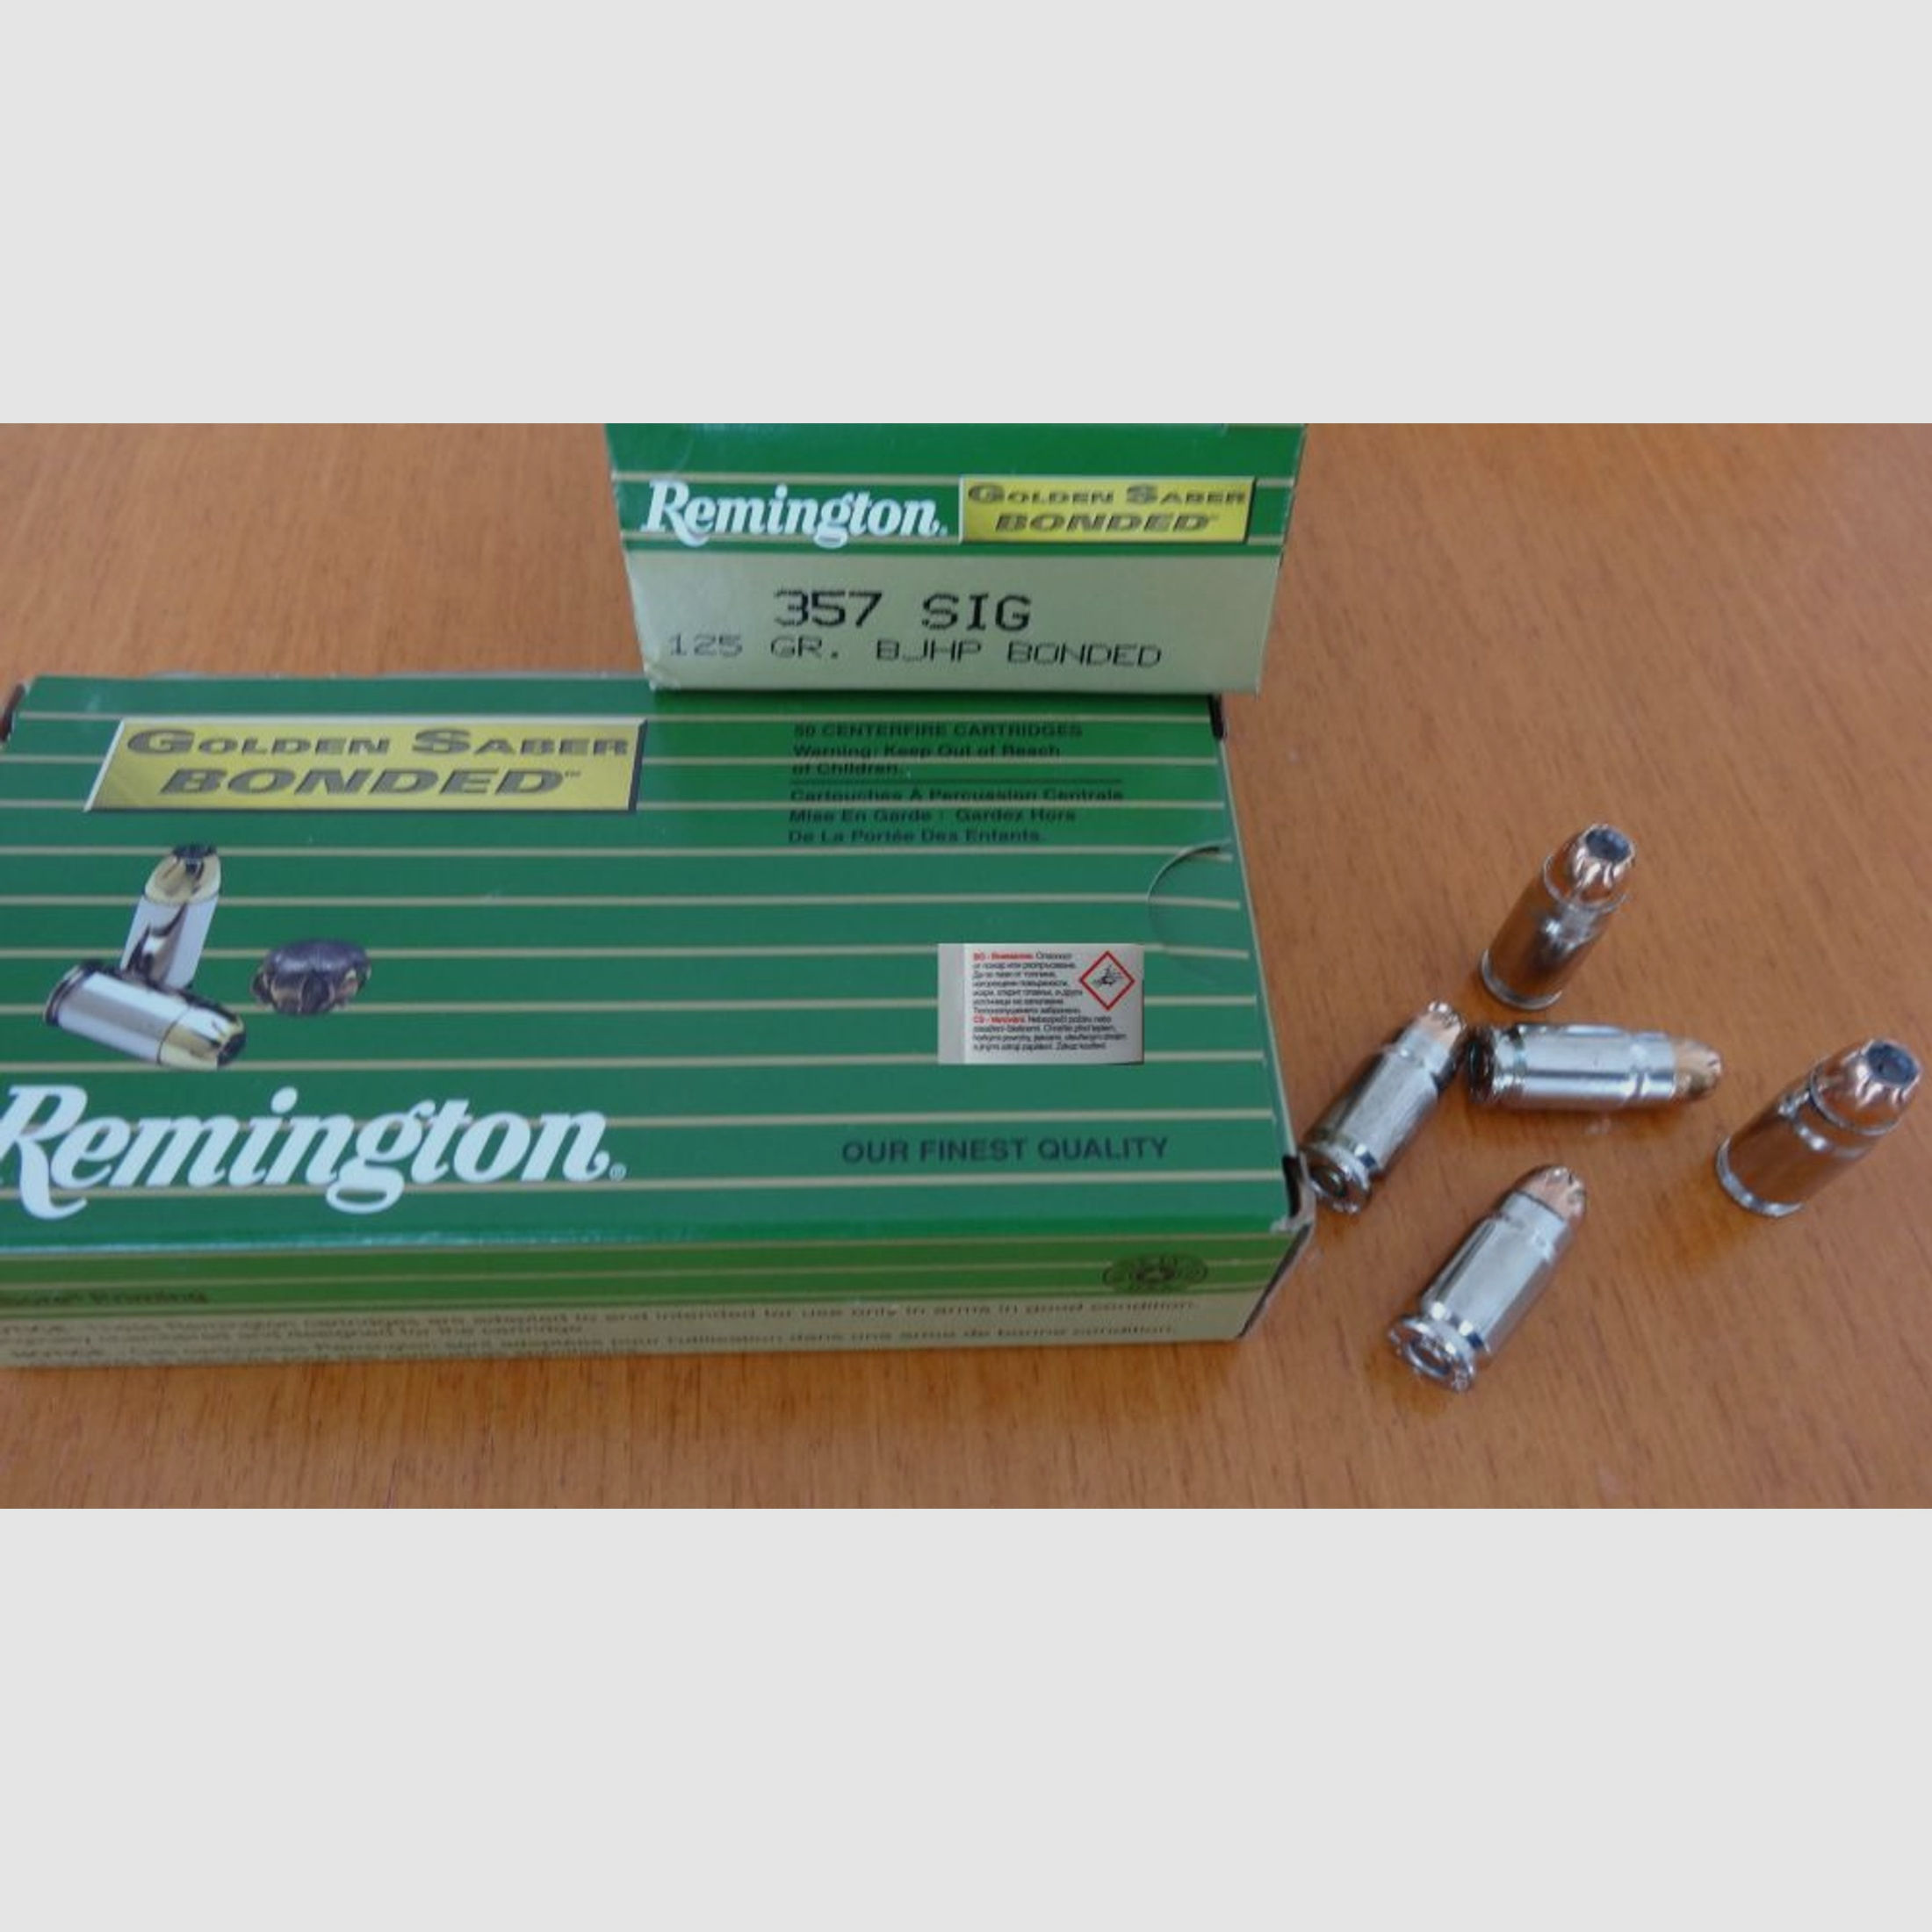 Remington	 REMINGTON GOLDEN SABER BONDED .357 SIG. 125 GR